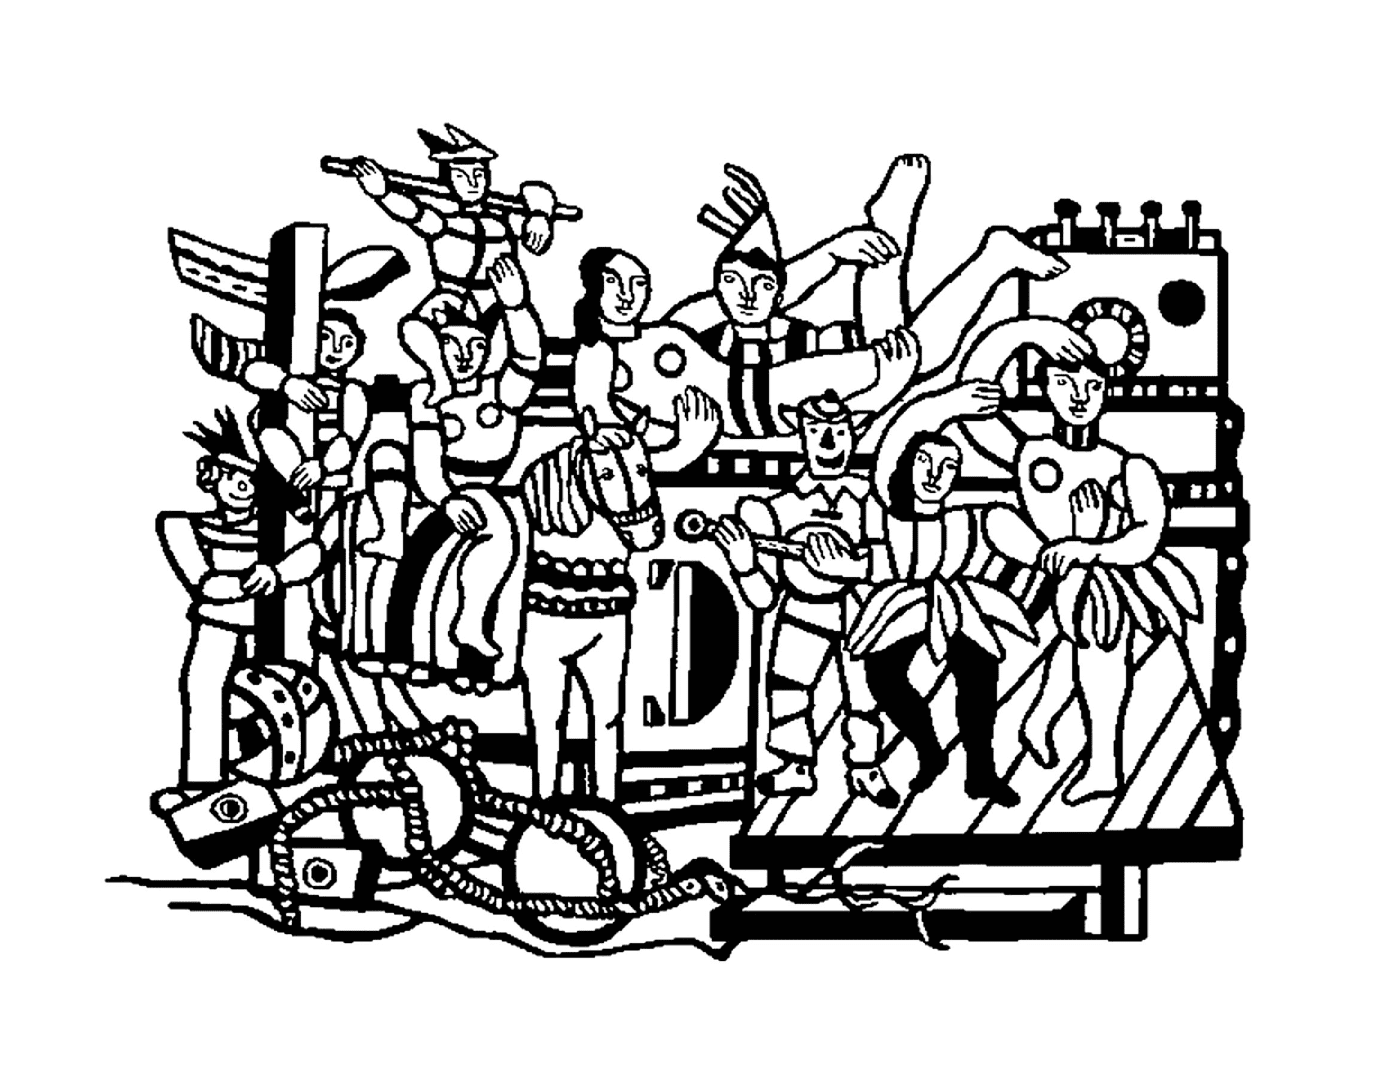   un groupe de personnes selon La Grande Parade de Fernand Léger 